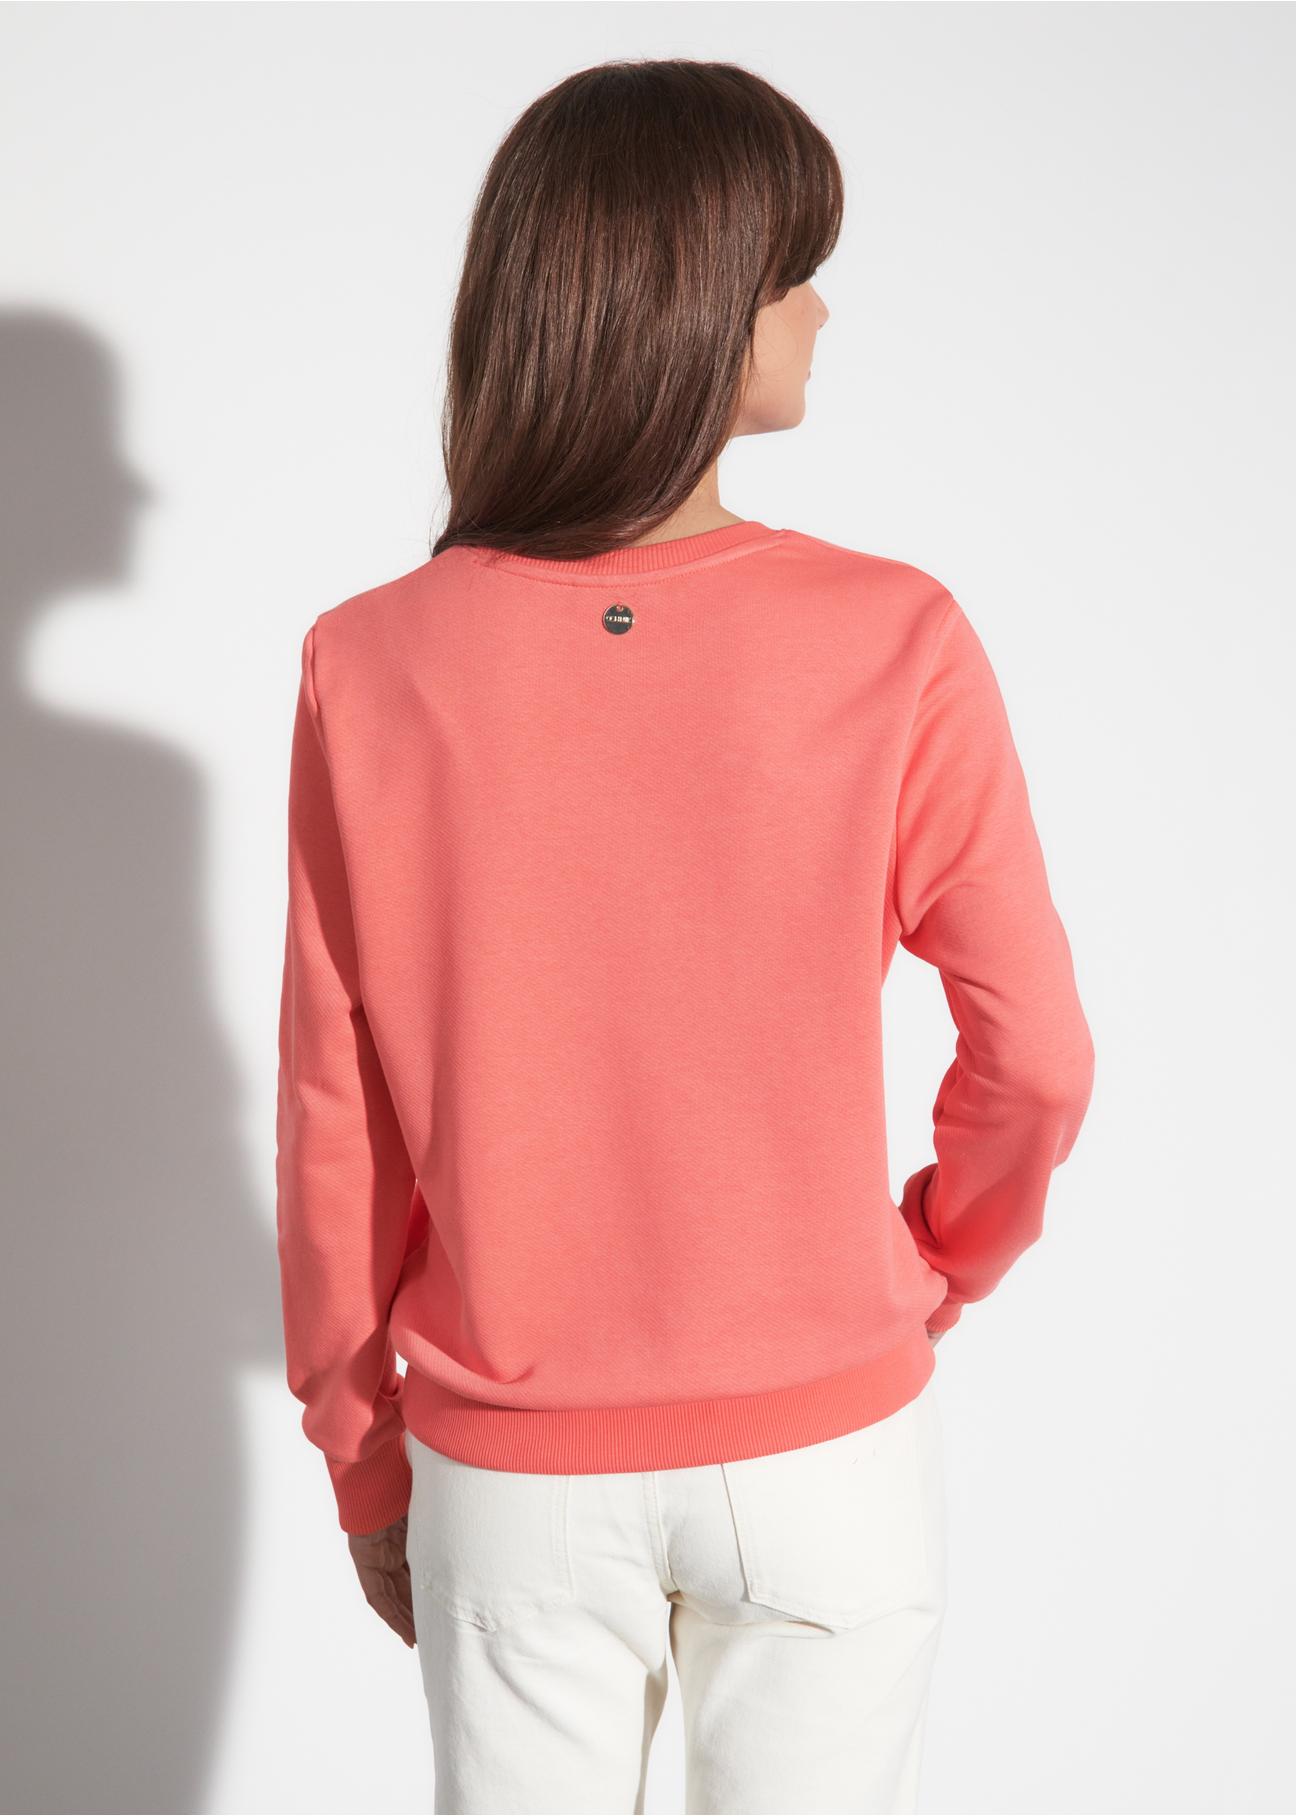 Różowa bluza damska z kwiecista aplikacją BLZDT-0087-34(W23)